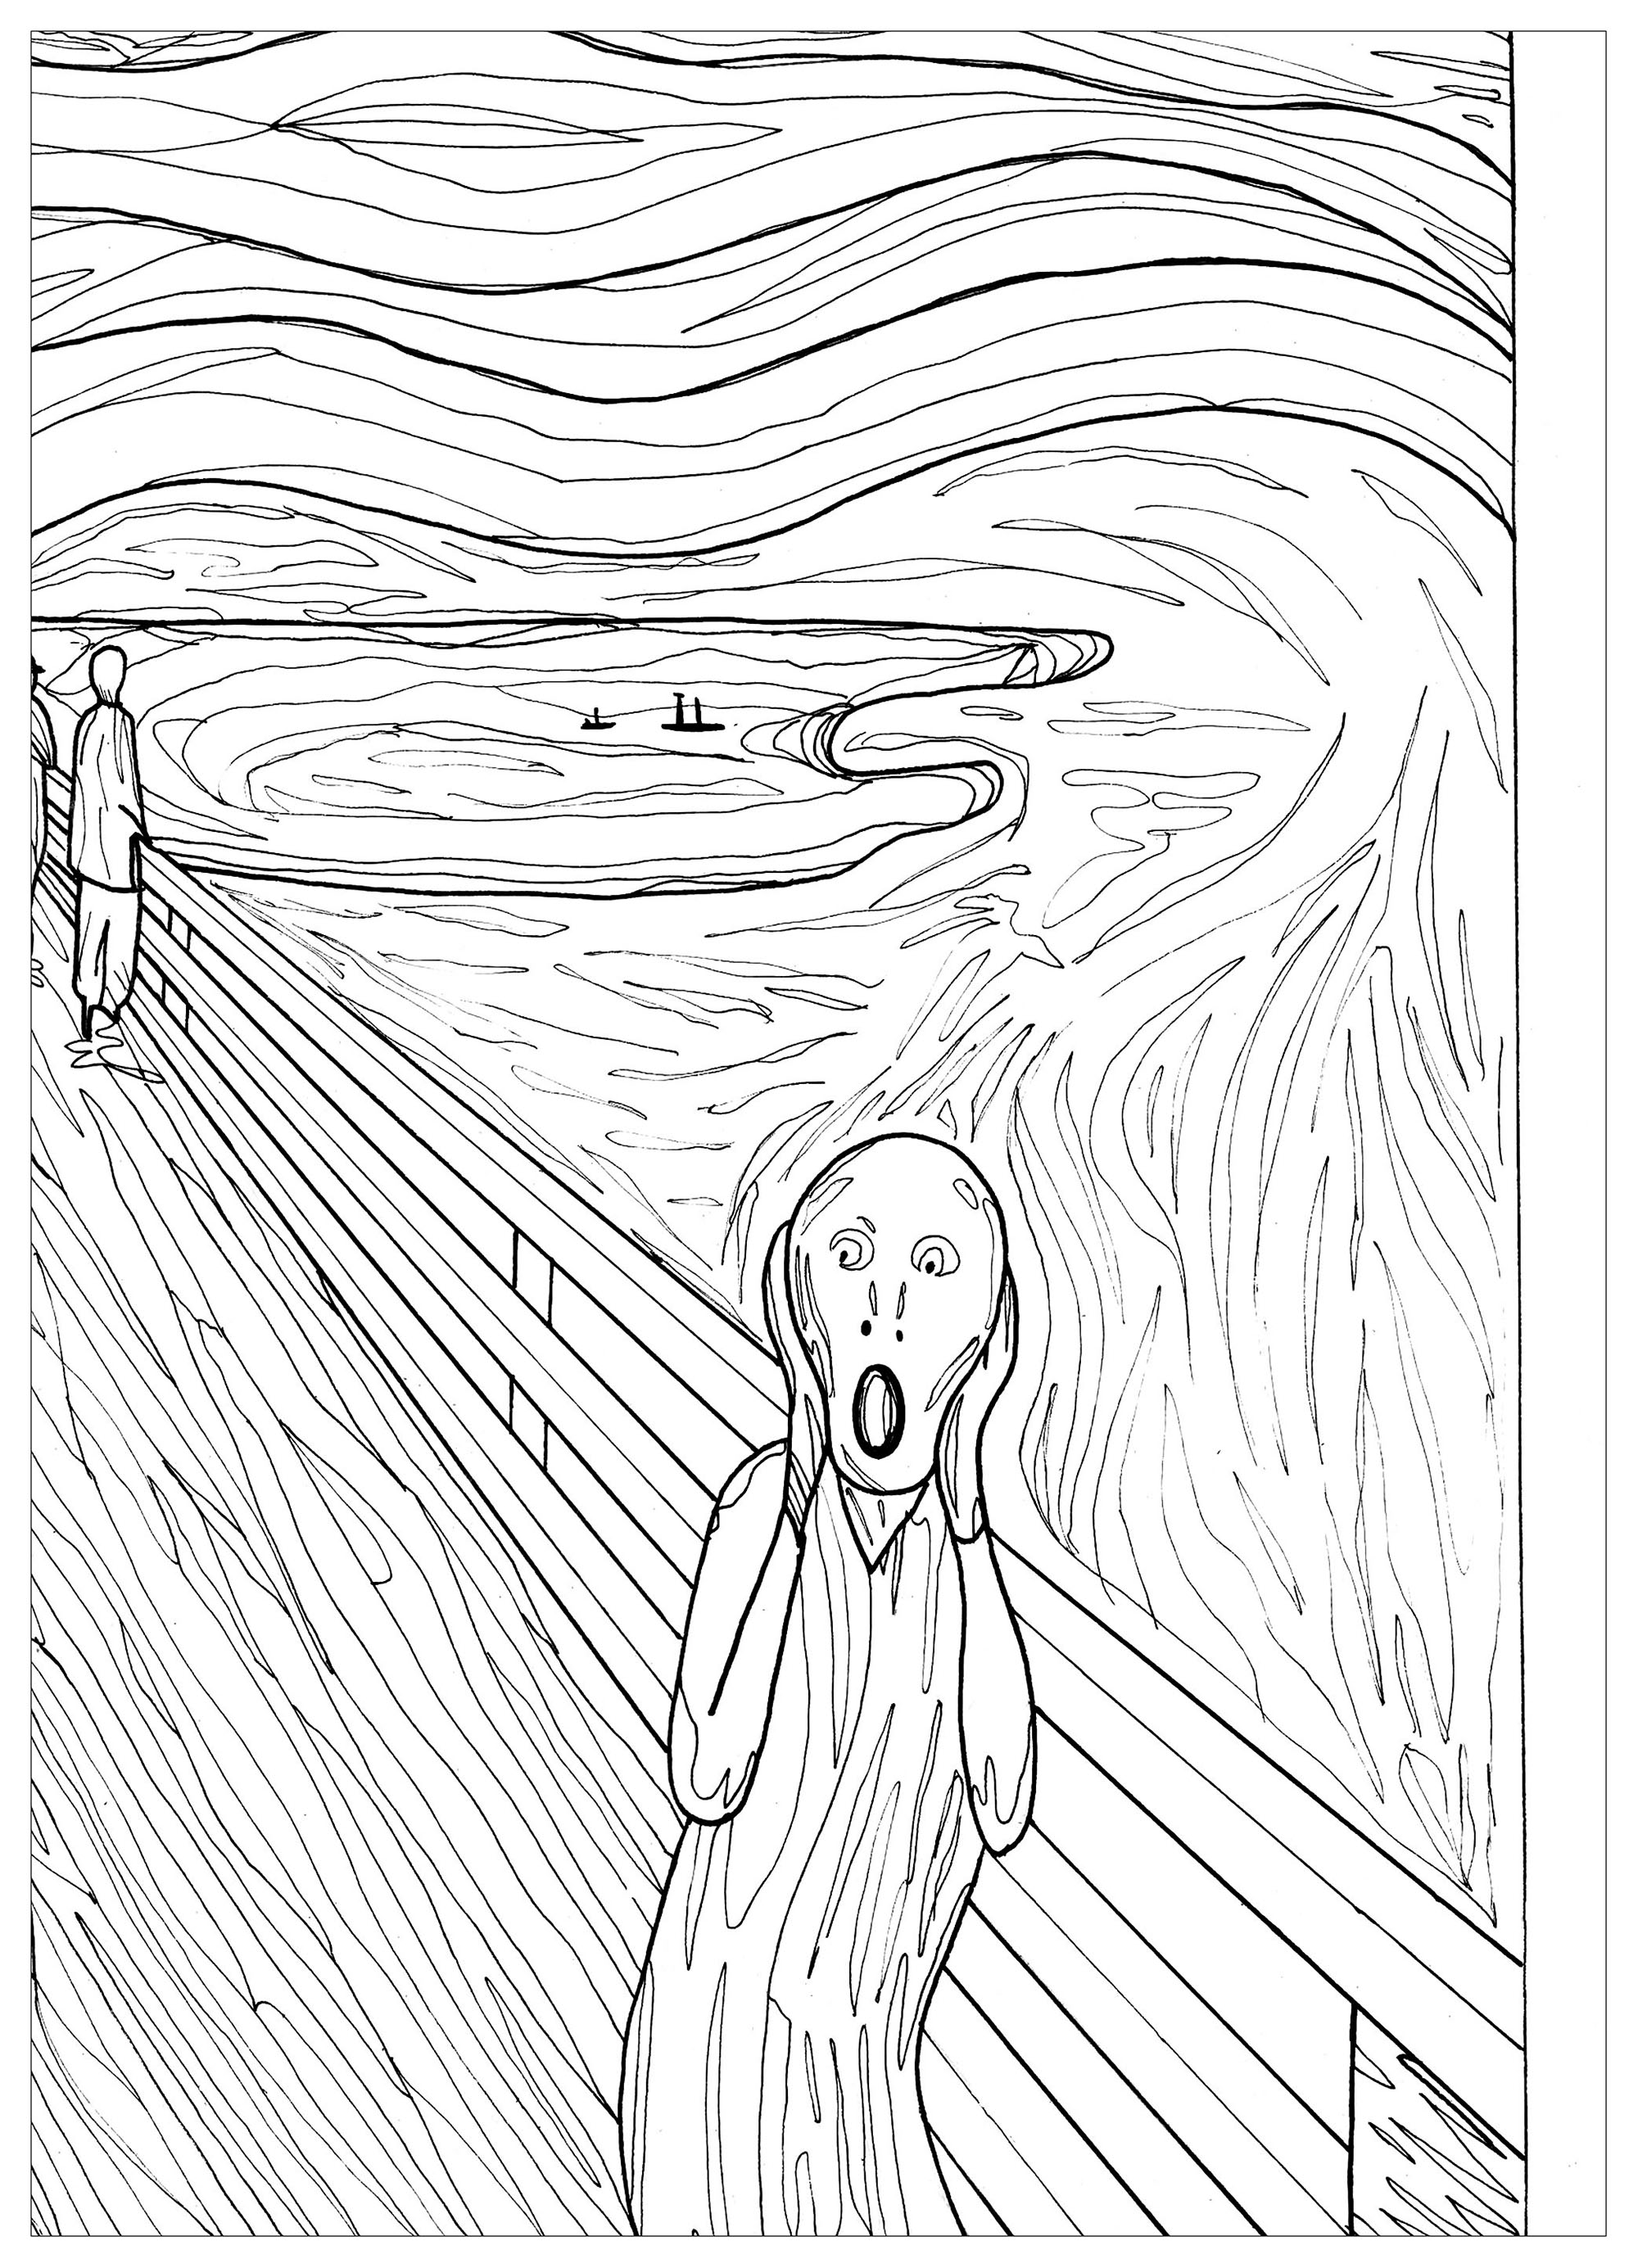 'El grito' de Edvard Munch le dará escalofríos. ¿Sabías que...? El director Wes Craven se inspiró en El grito de Munch cuando concibió la idea de la inquietante máscara que aparece a lo largo de su película de terror de 1996 Scream, protagonizada por Drew Barrymore, Courtney Cox y Neve Campbell.